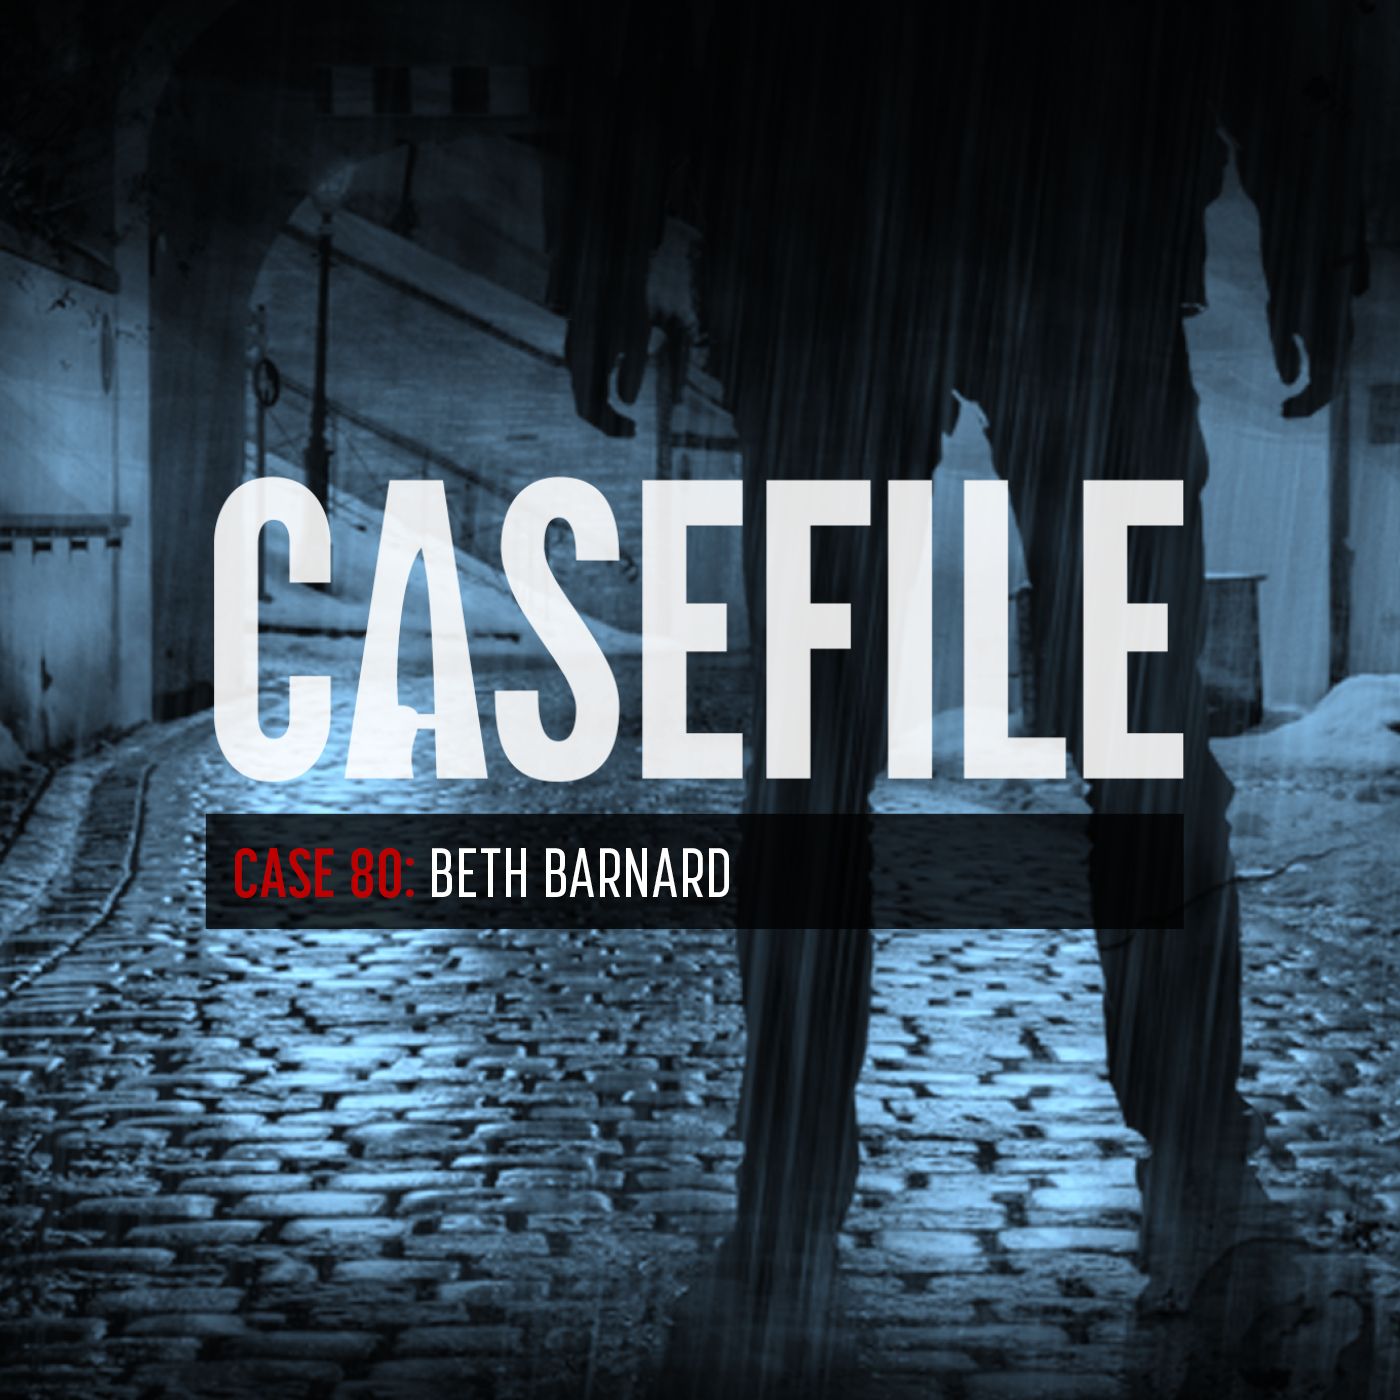 Case 80: Beth Barnard